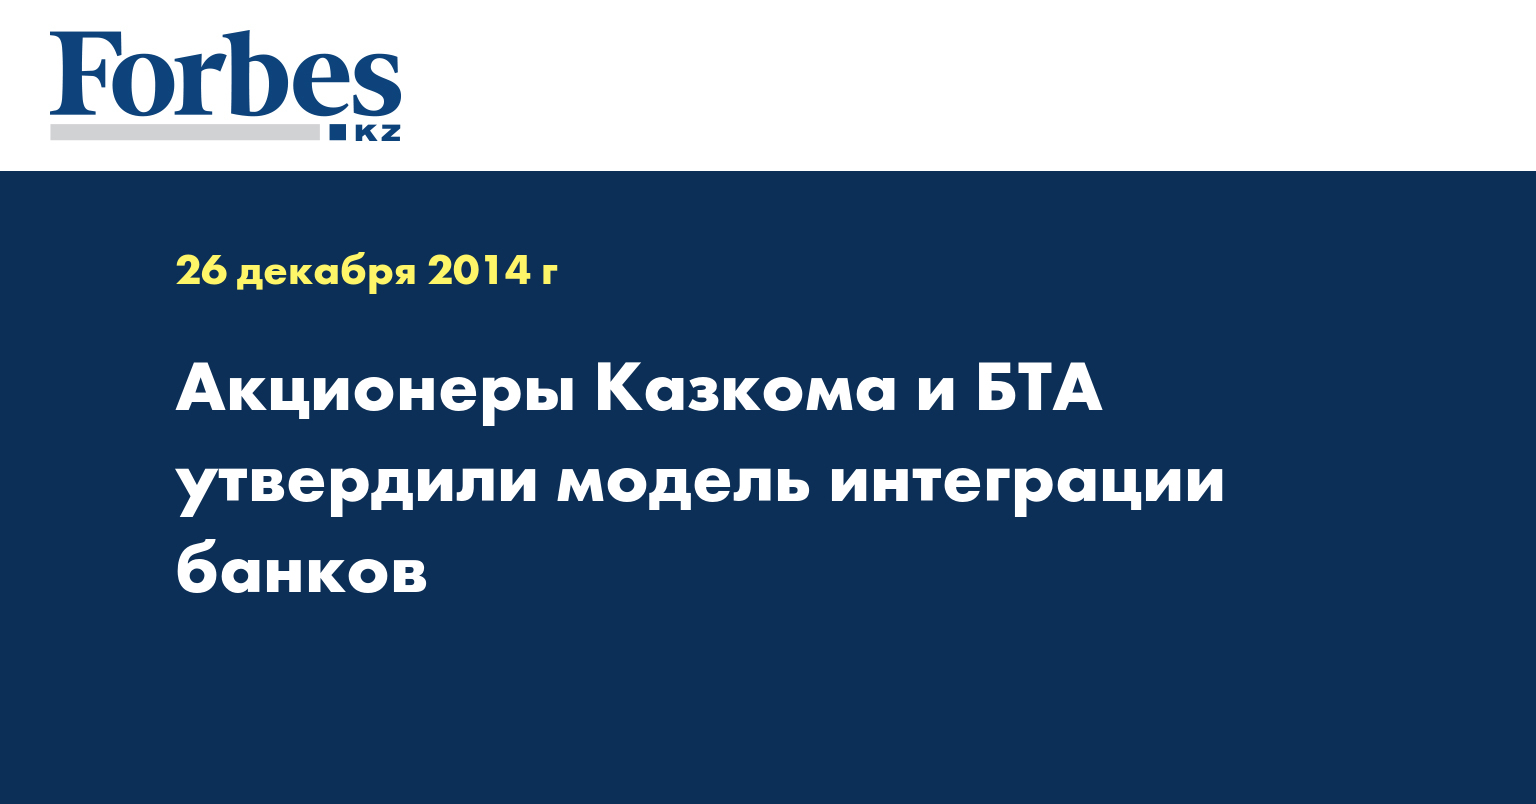 Акционеры Казкома и БТА утвердили модель интеграции банков